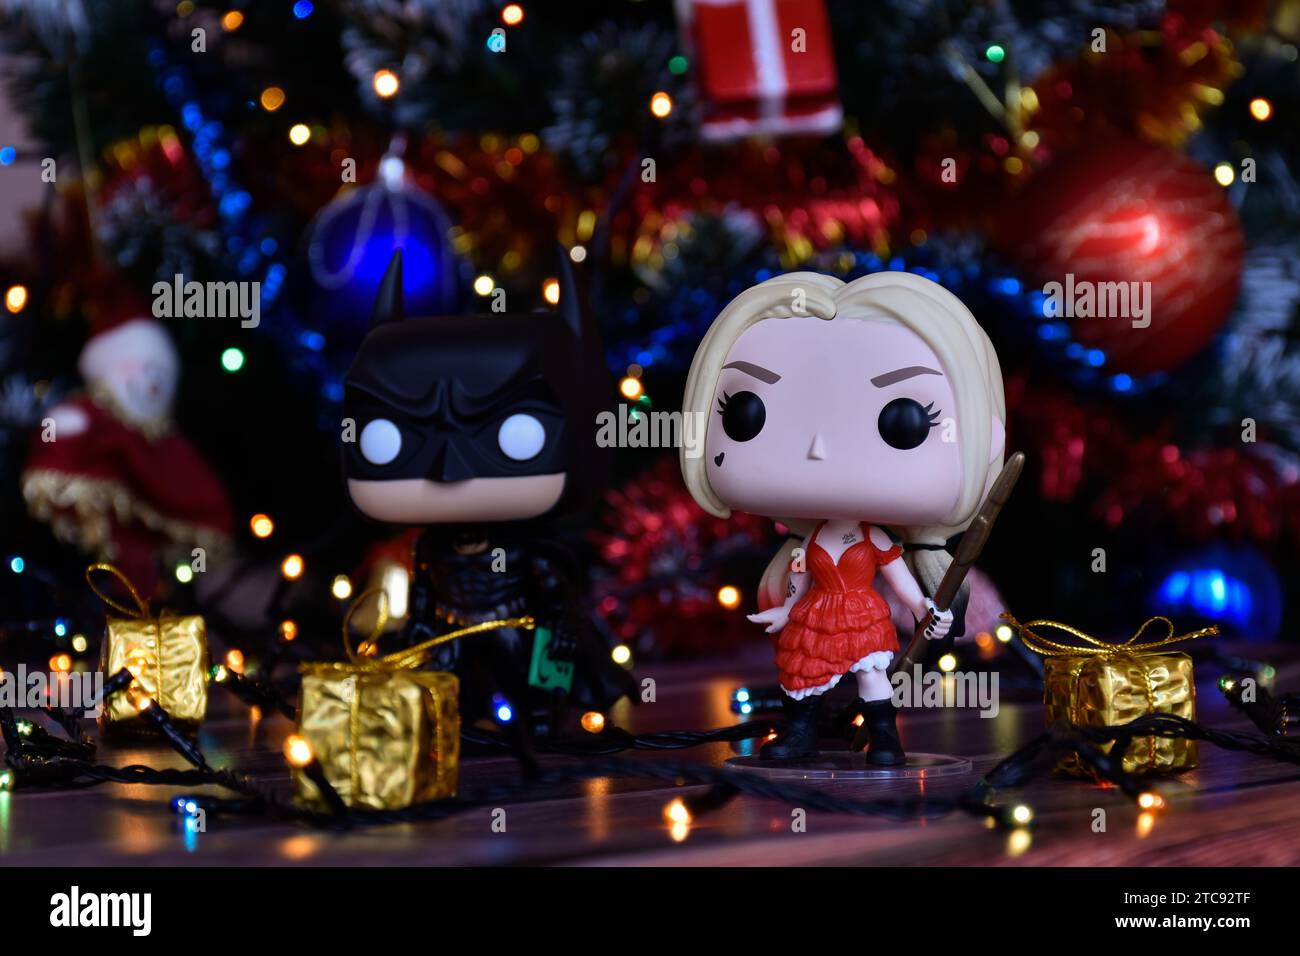 Funko Pop Actionfiguren der DC Comics Superhelden Batman und Harley Quinn. Weihnachtsbaum, Ornamente, Girlande, Geschenkboxen, bunte Lichter. Stockfoto